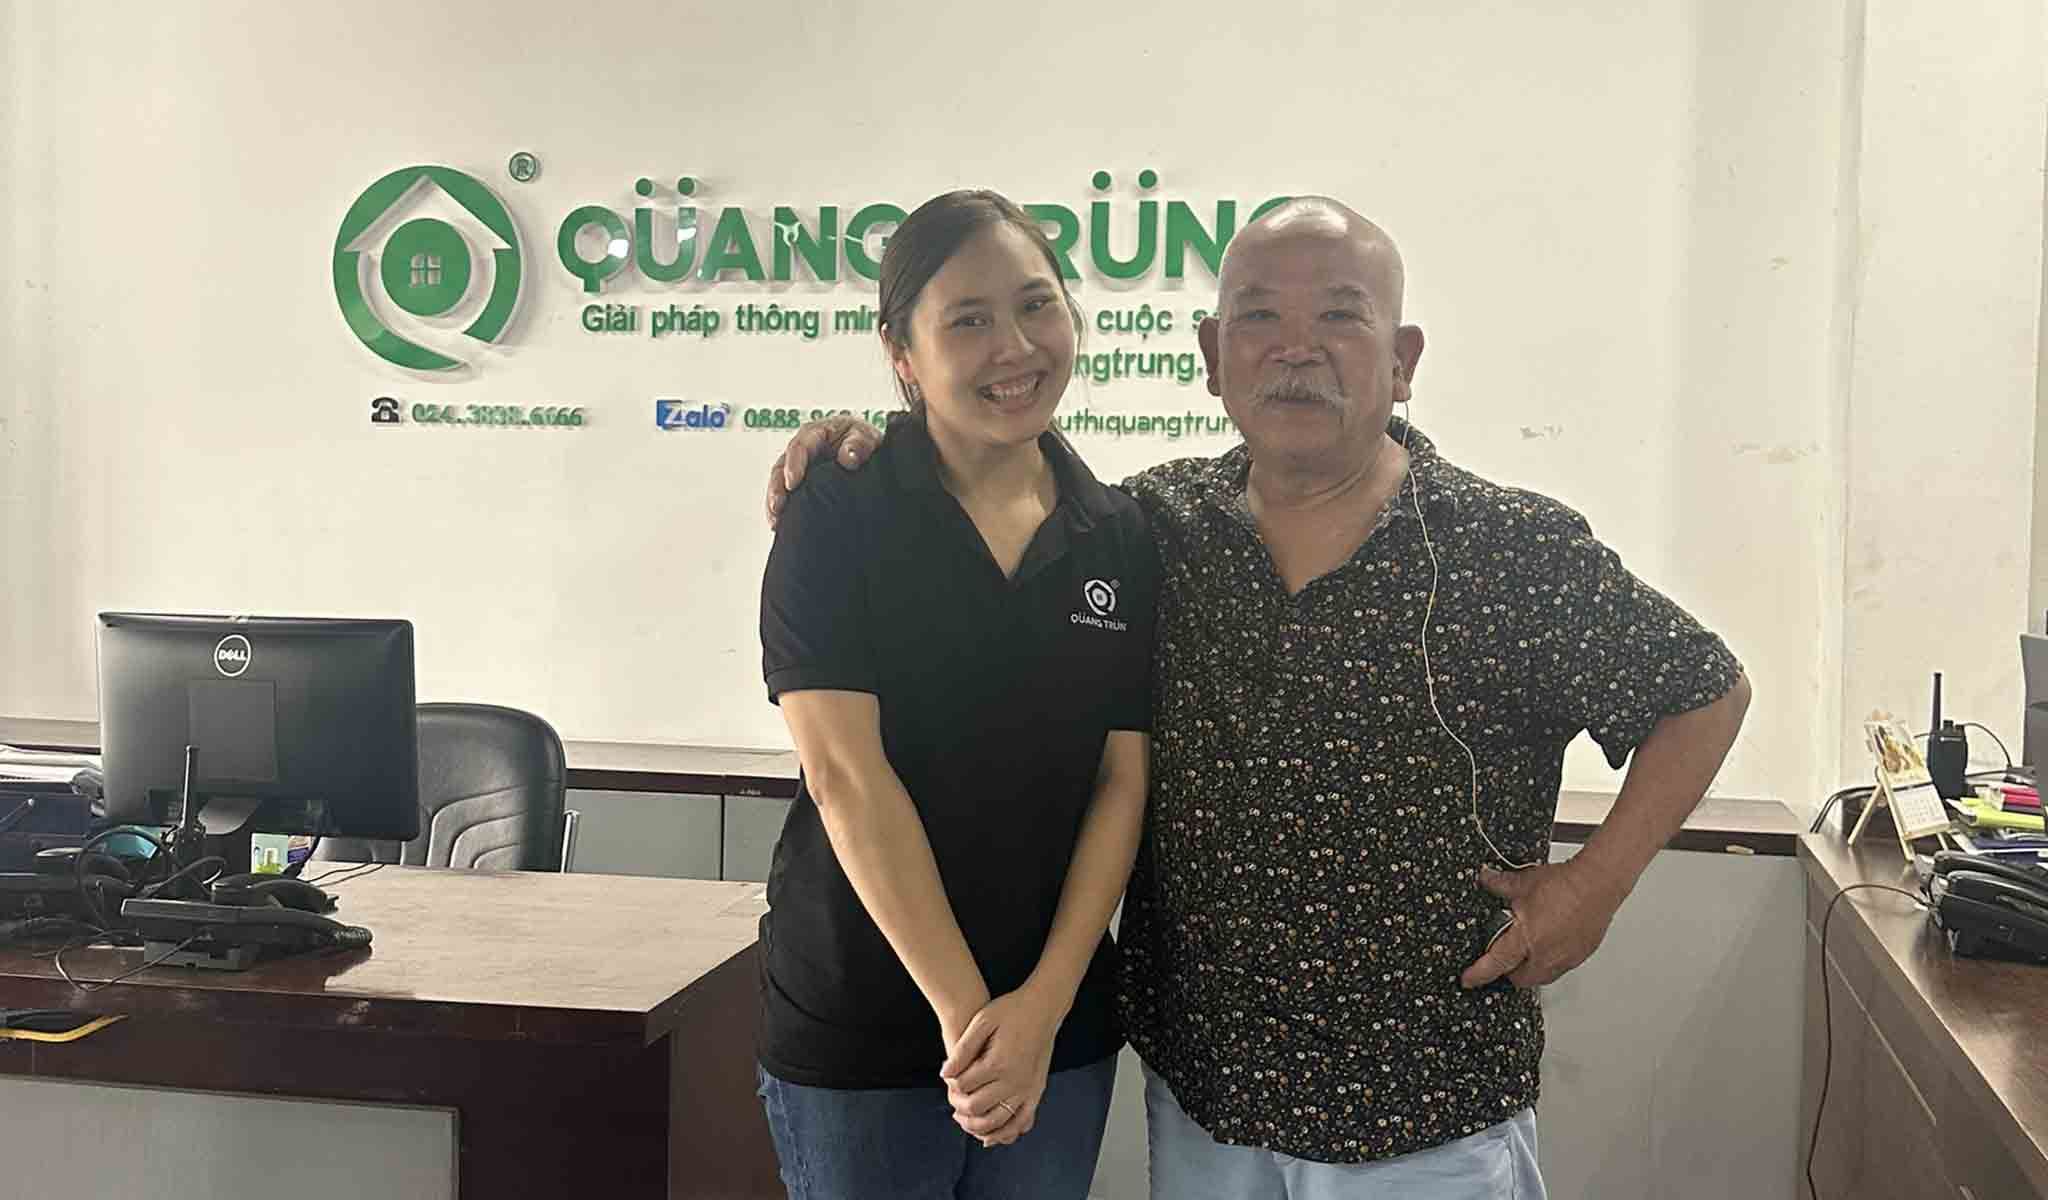 Chú Thìn và Nhân viên bán hàng Quang Trung